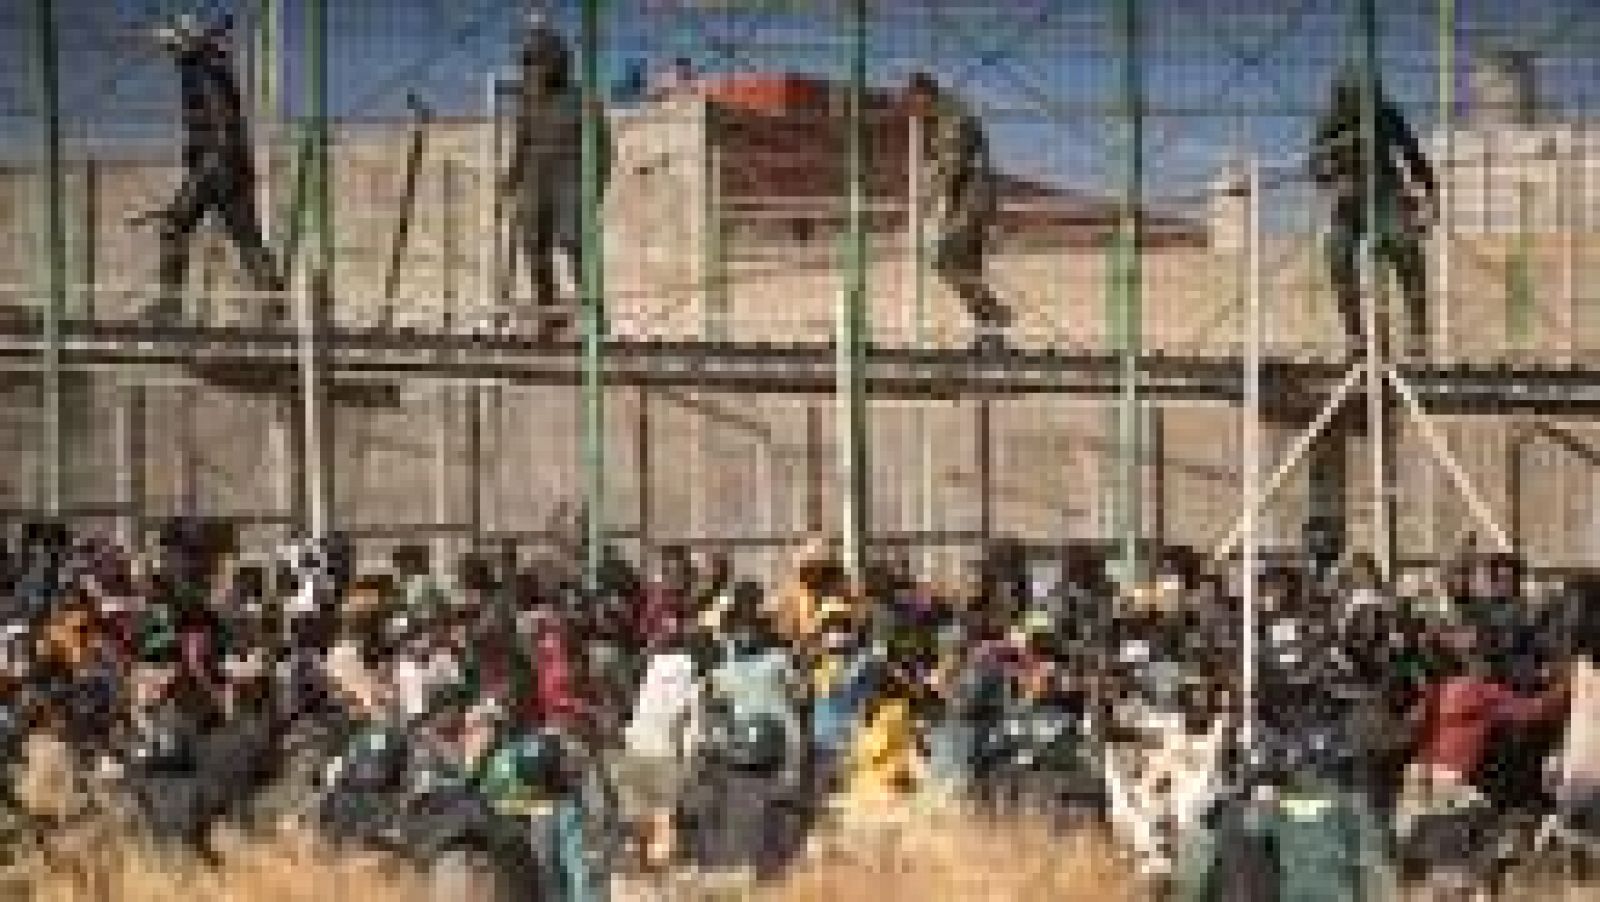 España y Marruecos cometieron "crímenes de derecho internacional" en la tragedia de Melilla, según Amnistía Internacional